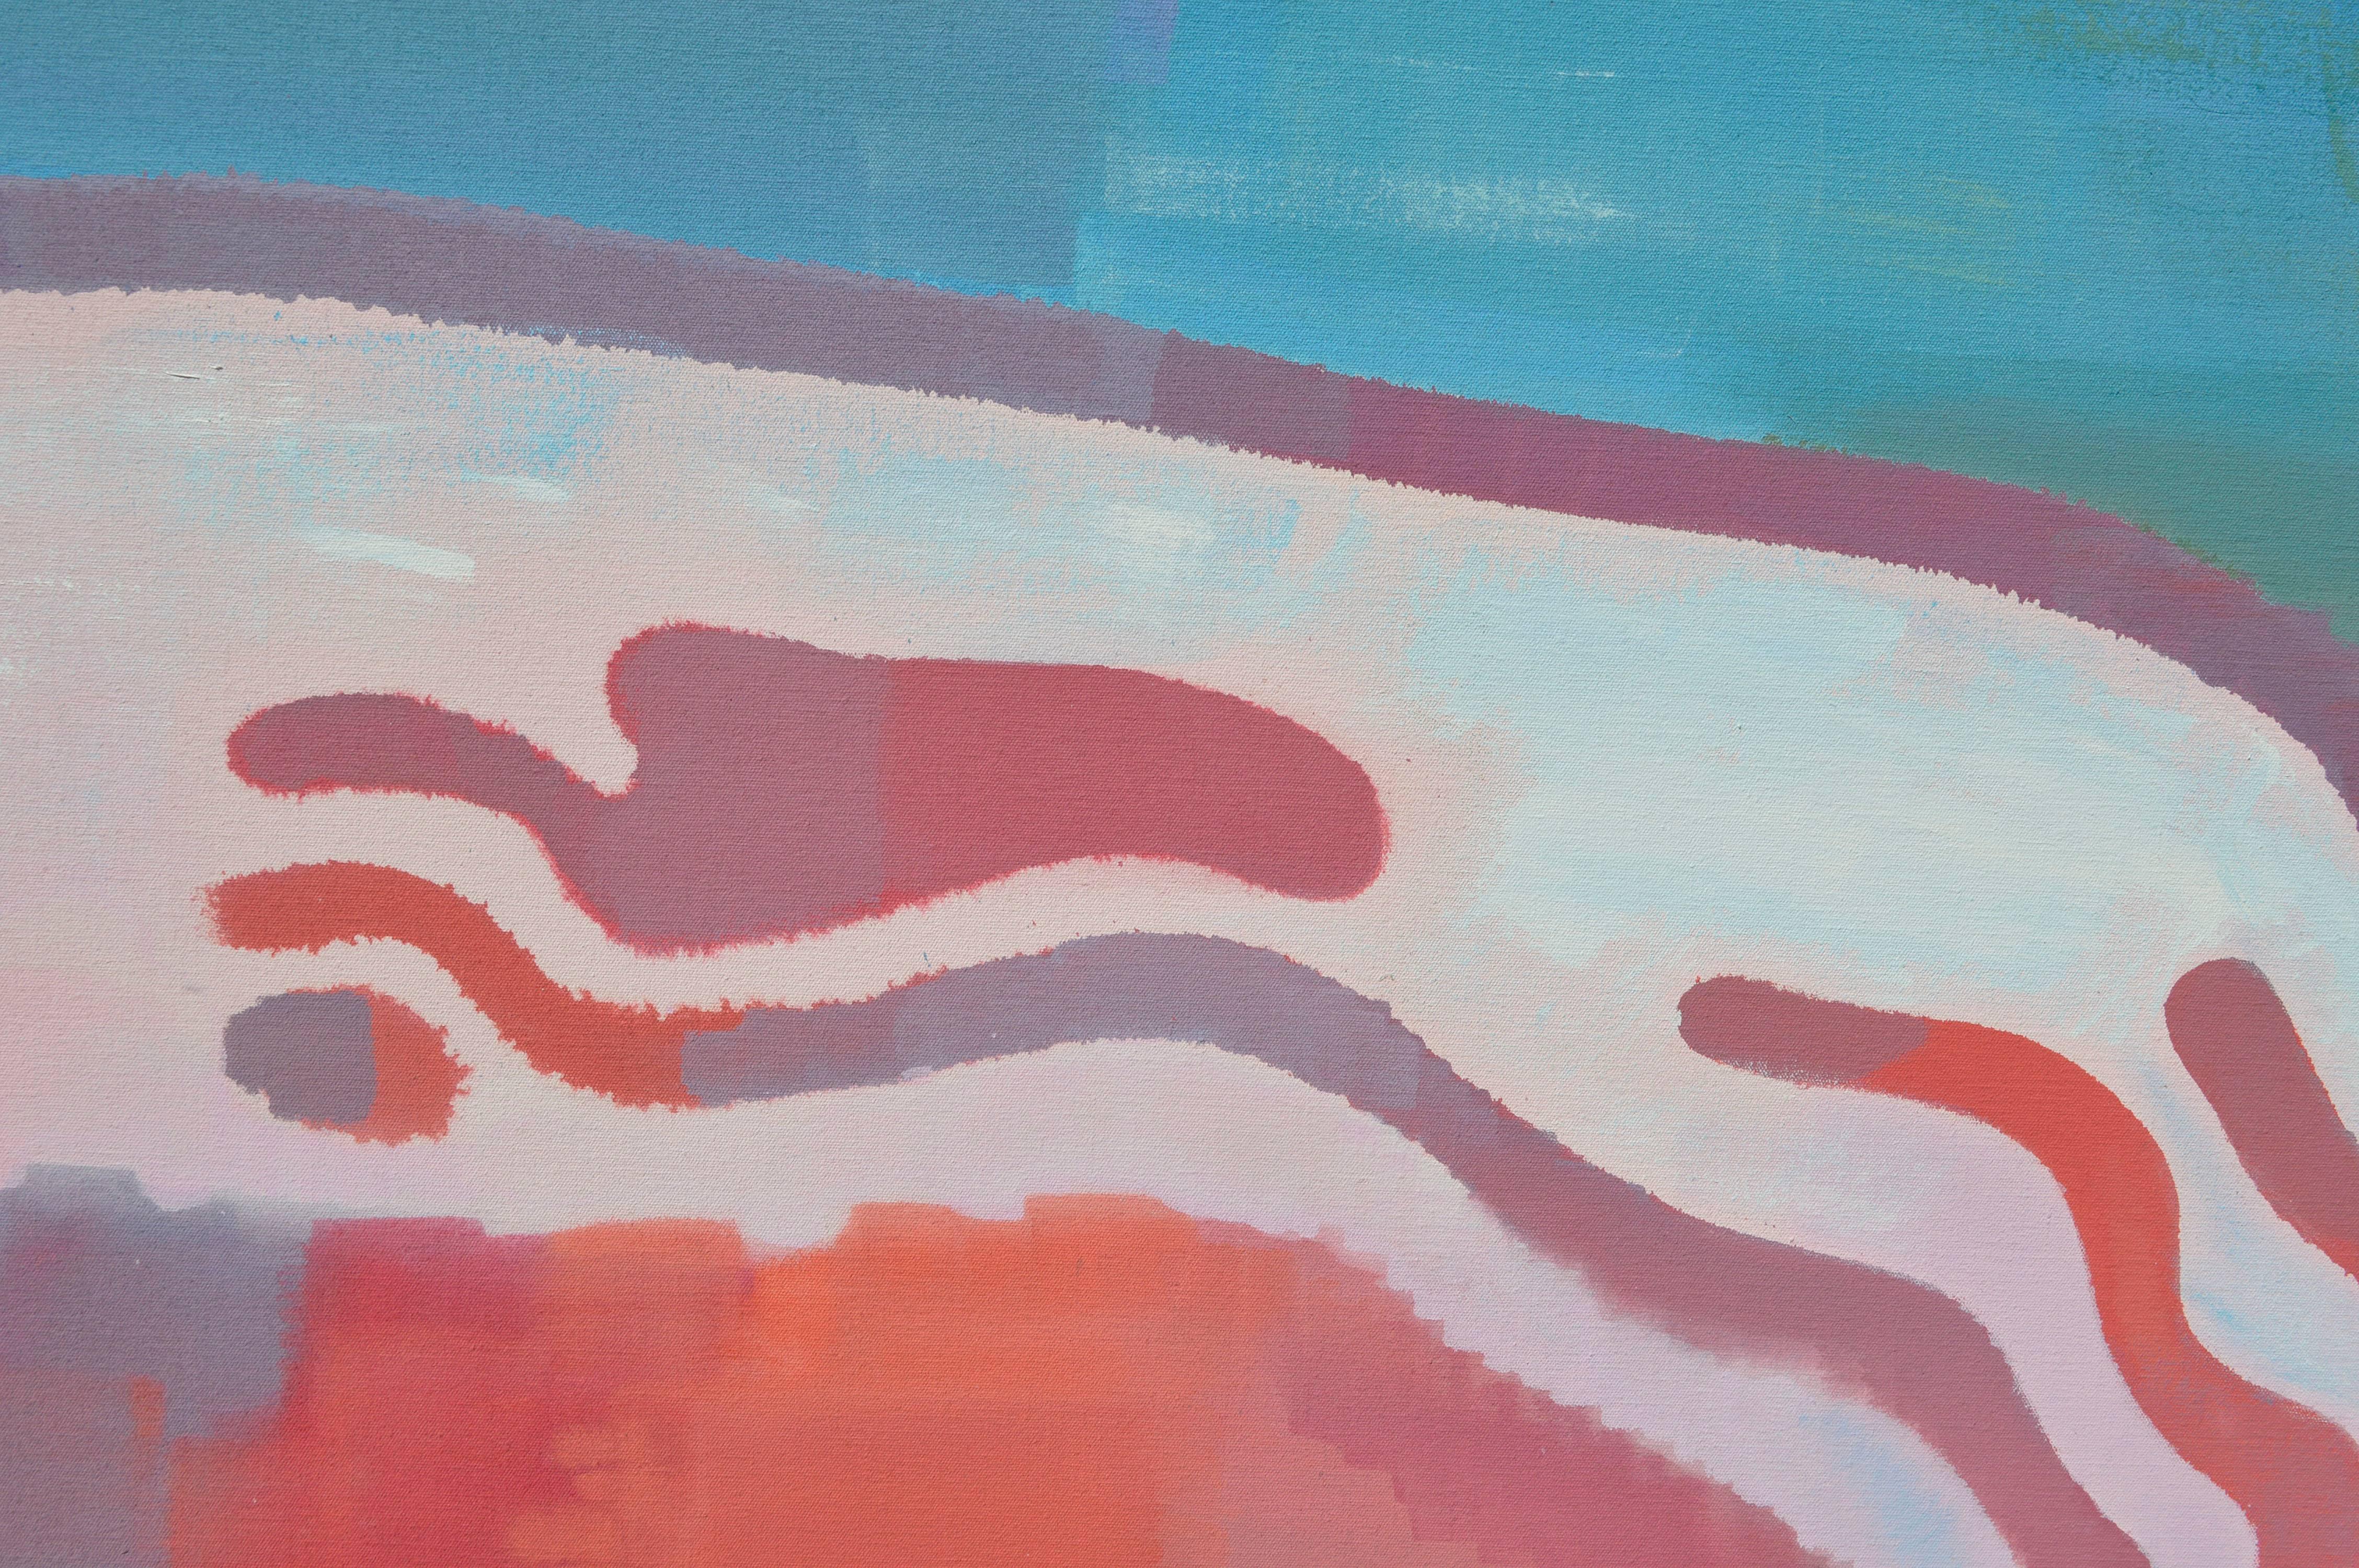 Abstrakte Bay Area-Landschaft in großformatigem Maßstab - Salzponds – Painting von Erle Loran